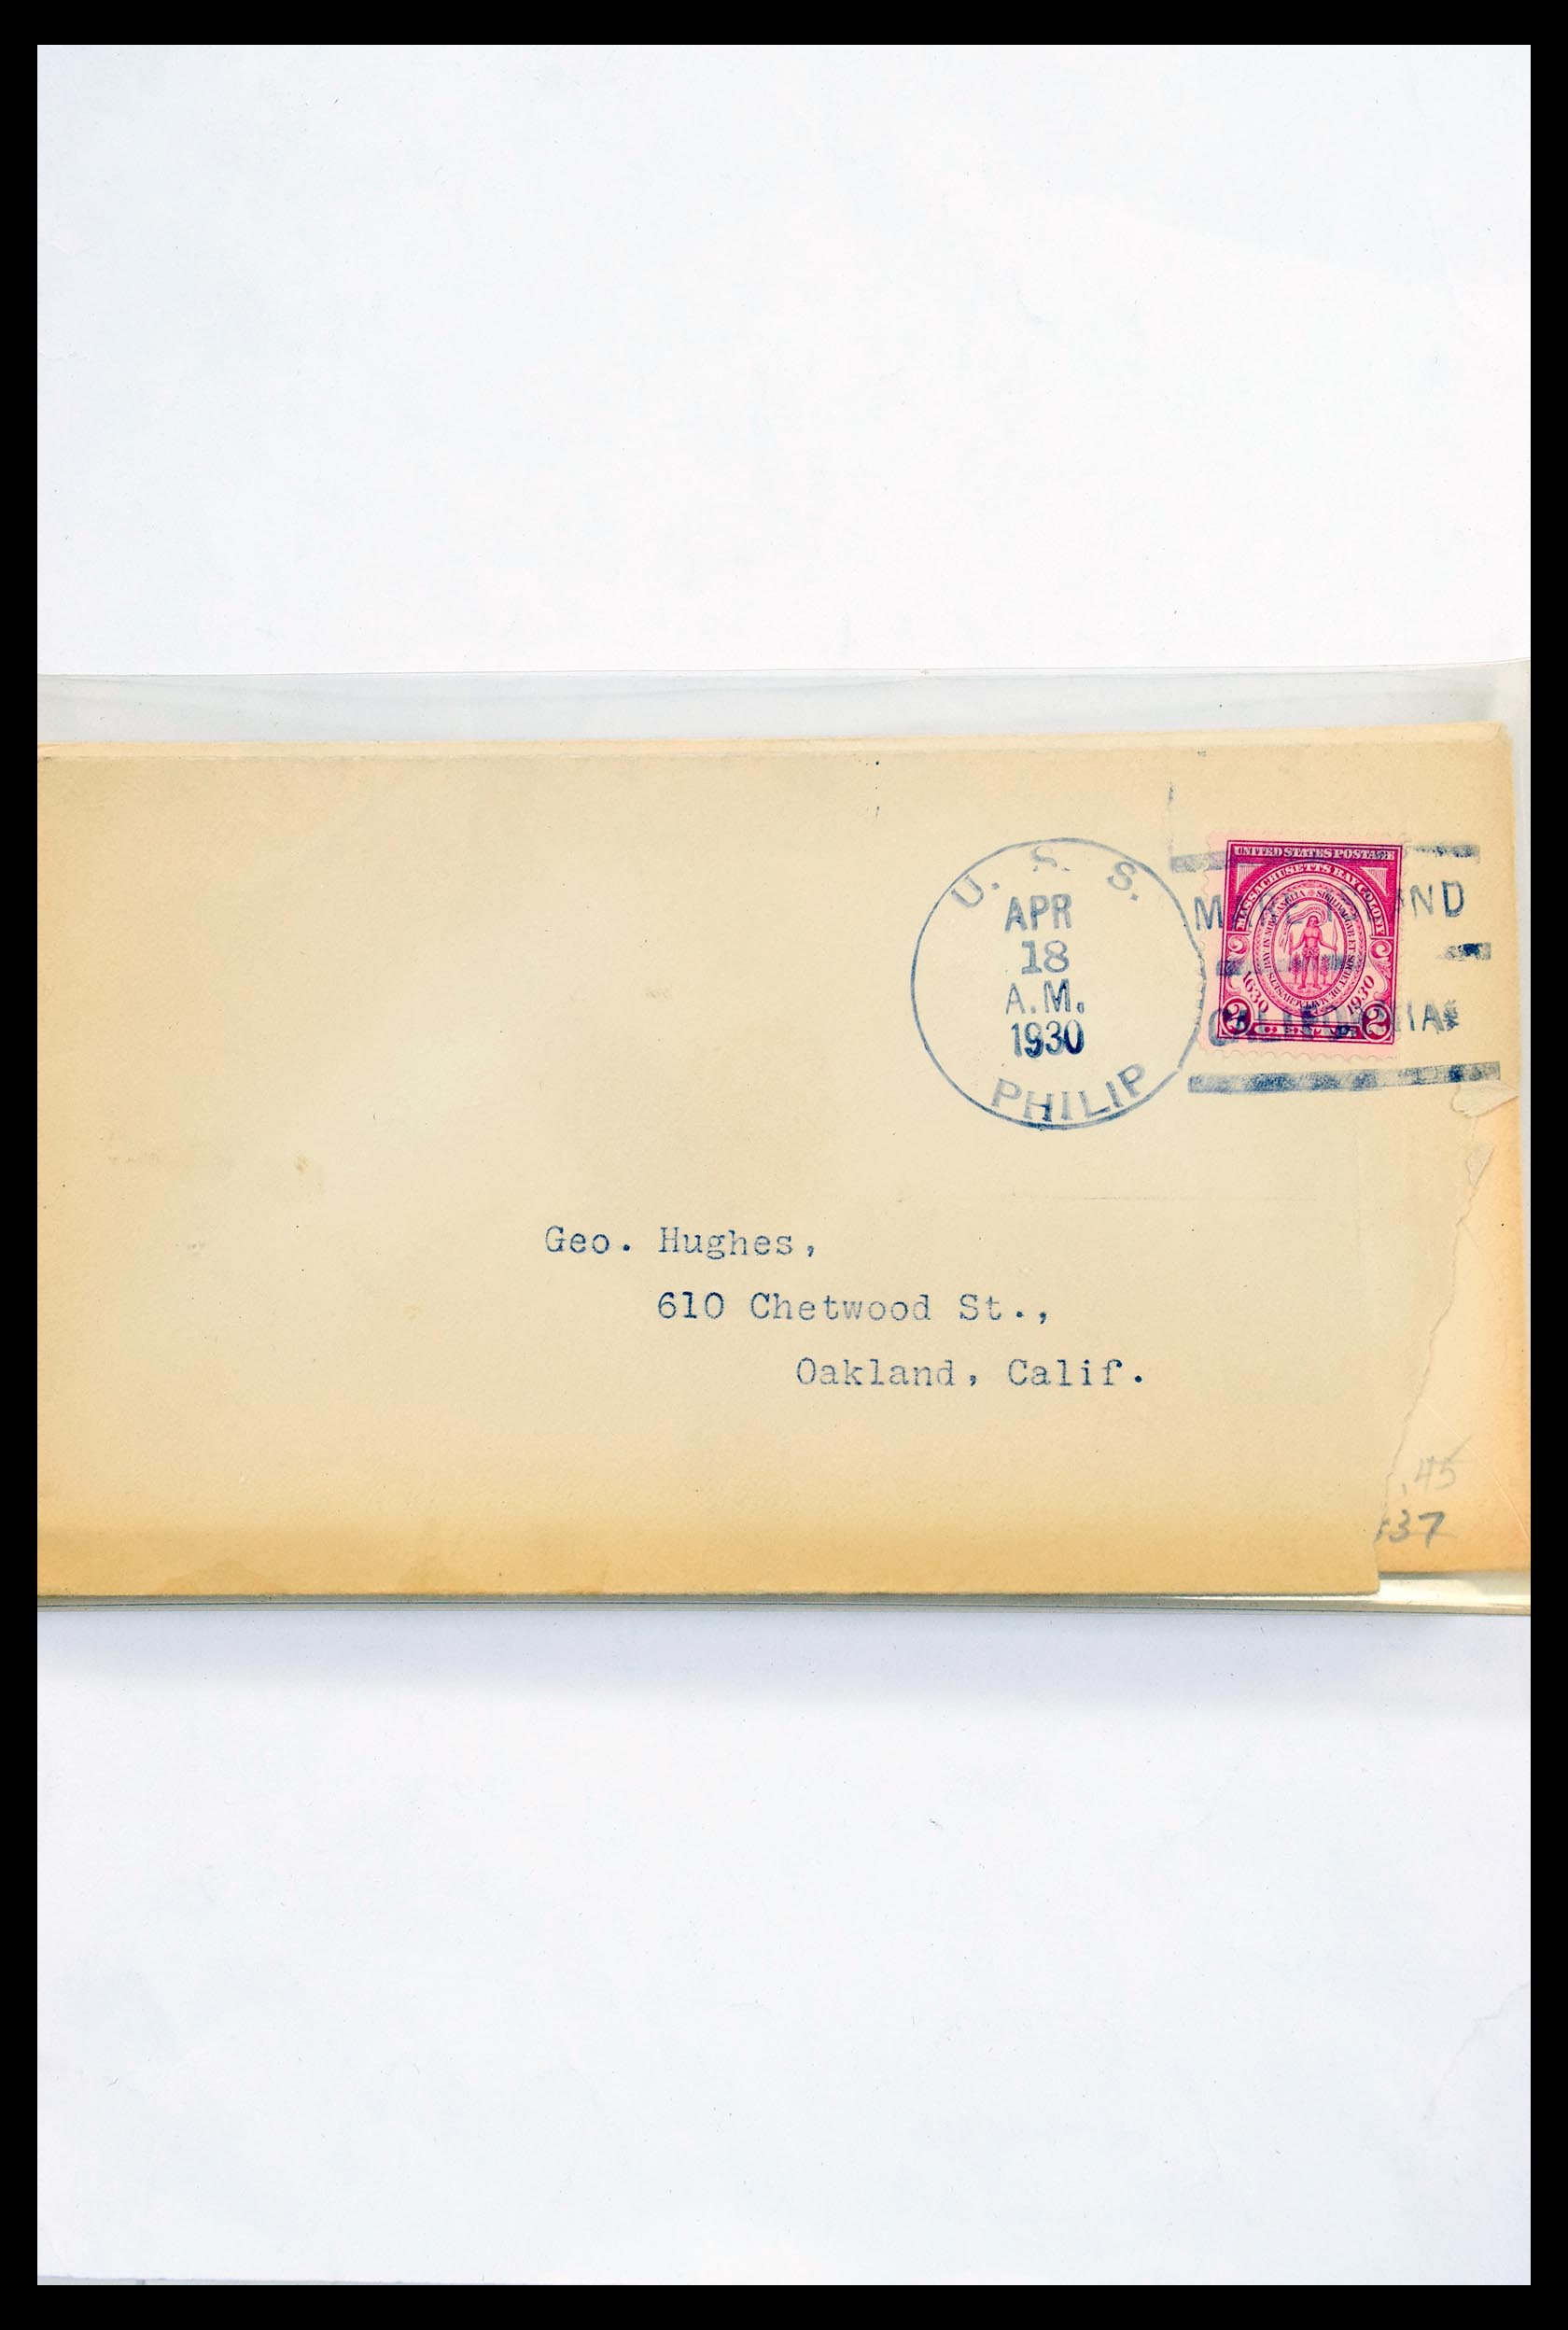 30341 326 - 30341 USA scheepspost brieven 1930-1970.